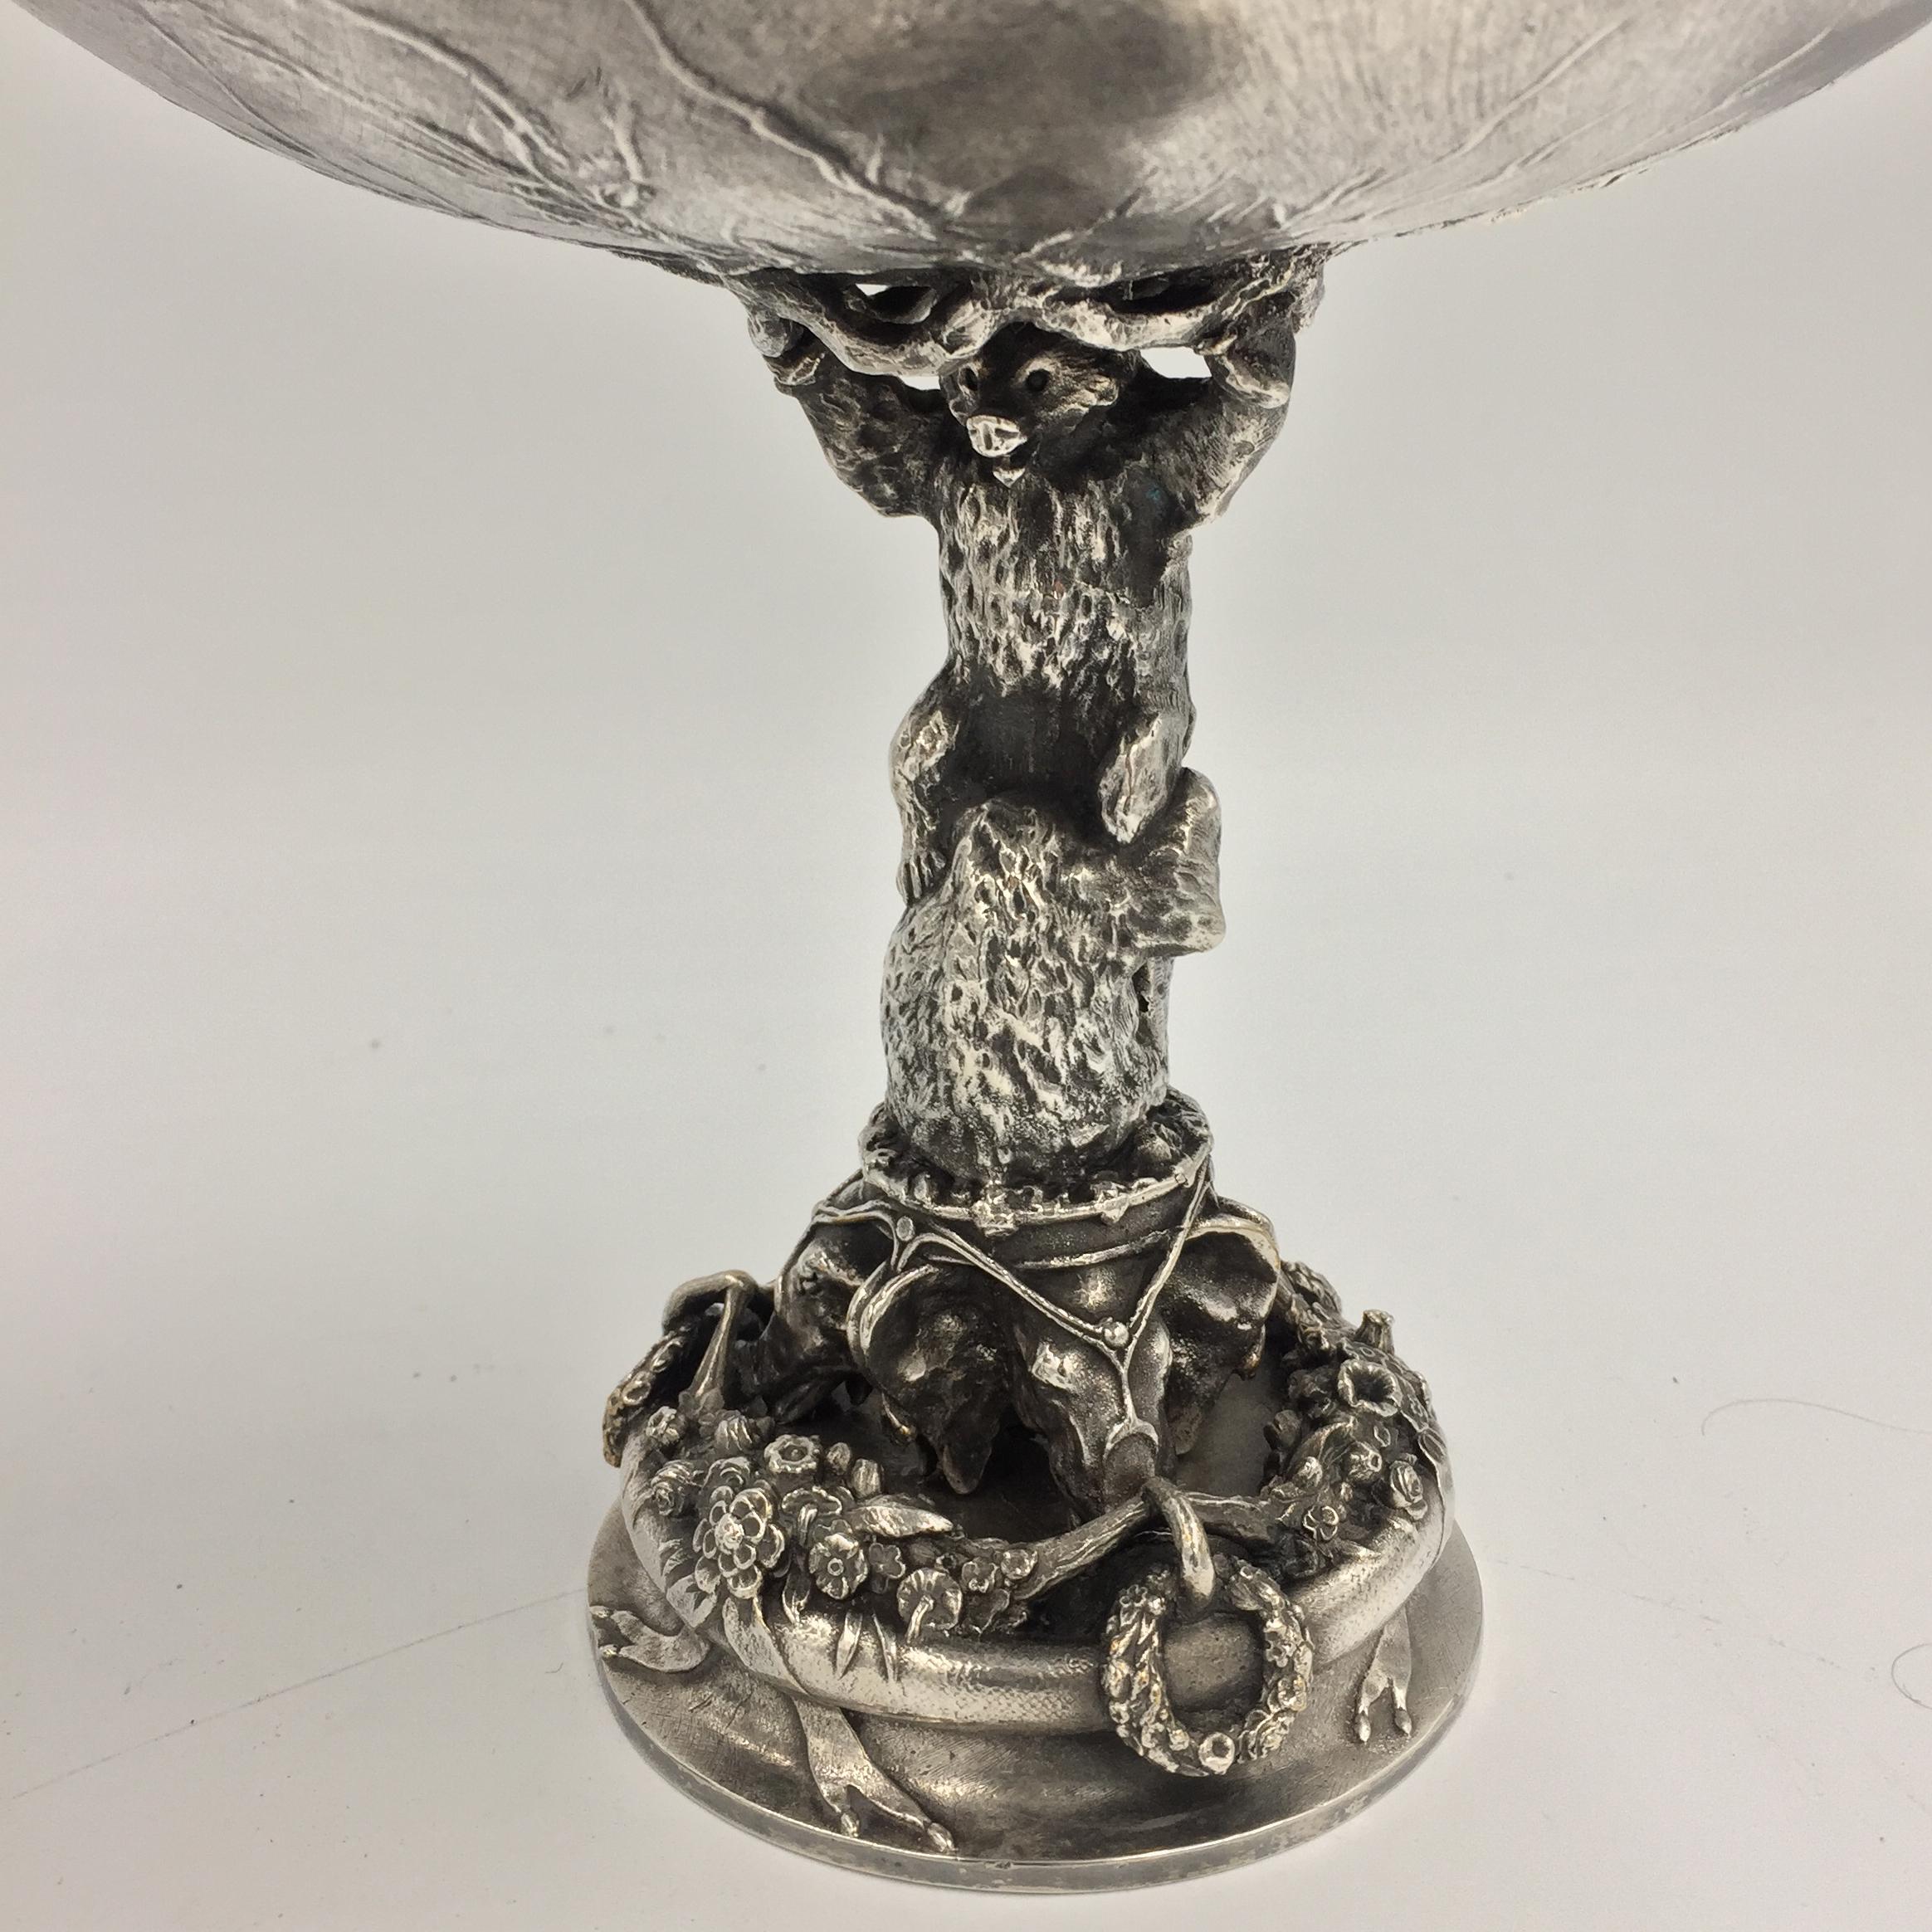 Cette tasse à ours Fratin est du 19ème siècle, non signée mais similaire à d'autres, en bronze argenté.
La coupe est montée sur pied et est composée à la base de têtes d'éléphants et au-dessus d'un aigle. L'argenture date du 20e